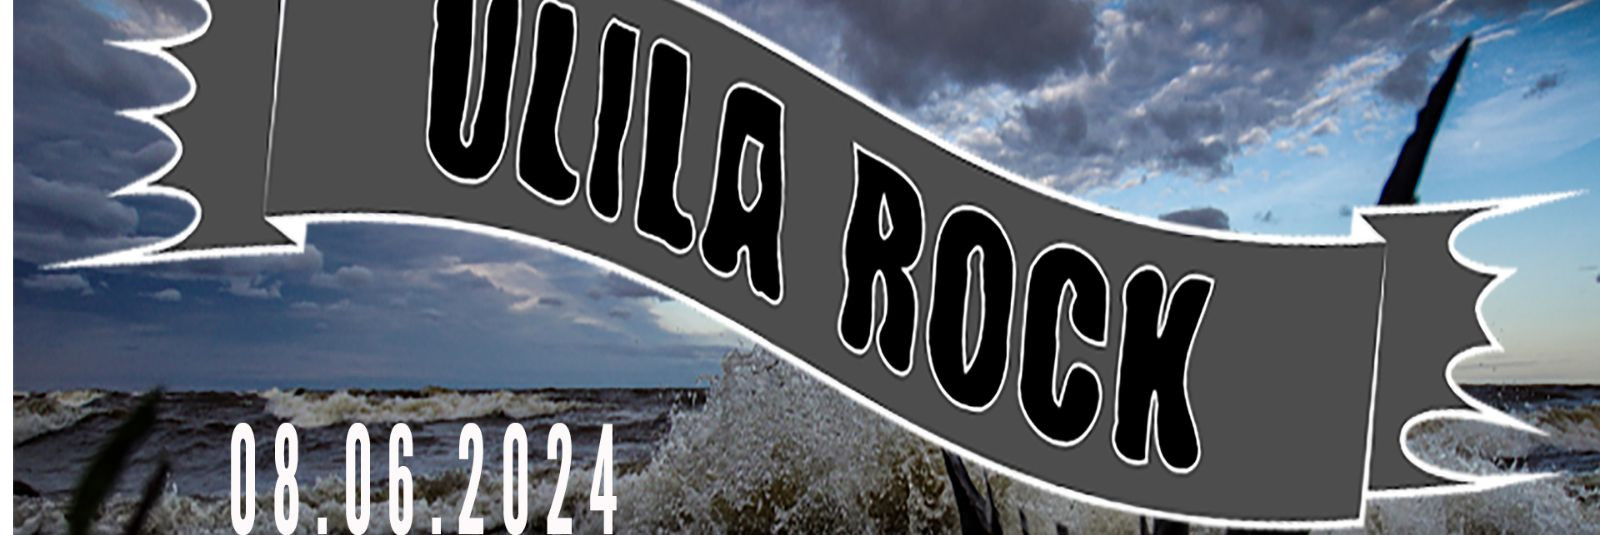 Ulila Suveaed, Võrtsjärv ja 10 teist korraldajat kutsuvad teid osa saama suve kuumimast rock-festivalist - Ulila Rock 2024! Toimumiskohaks on legendaarne Ulila 